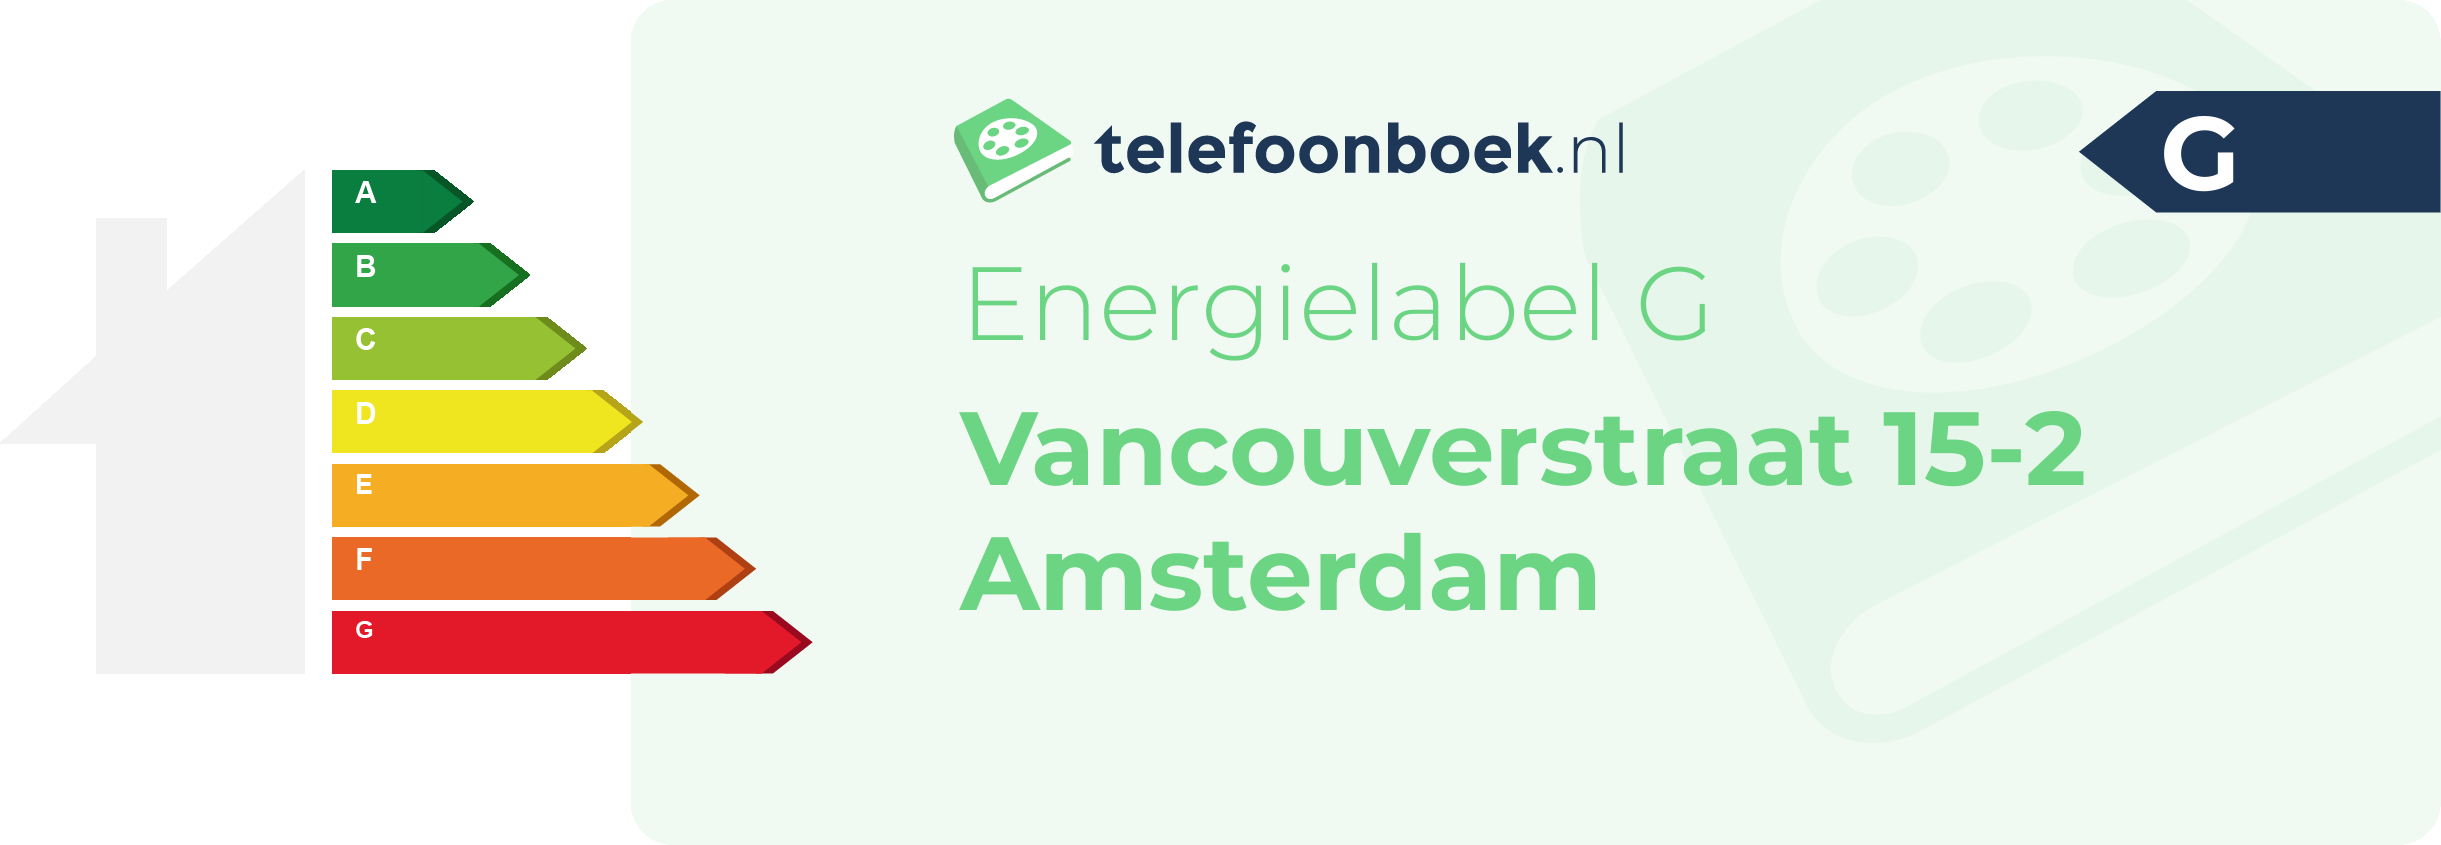 Energielabel Vancouverstraat 15-2 Amsterdam